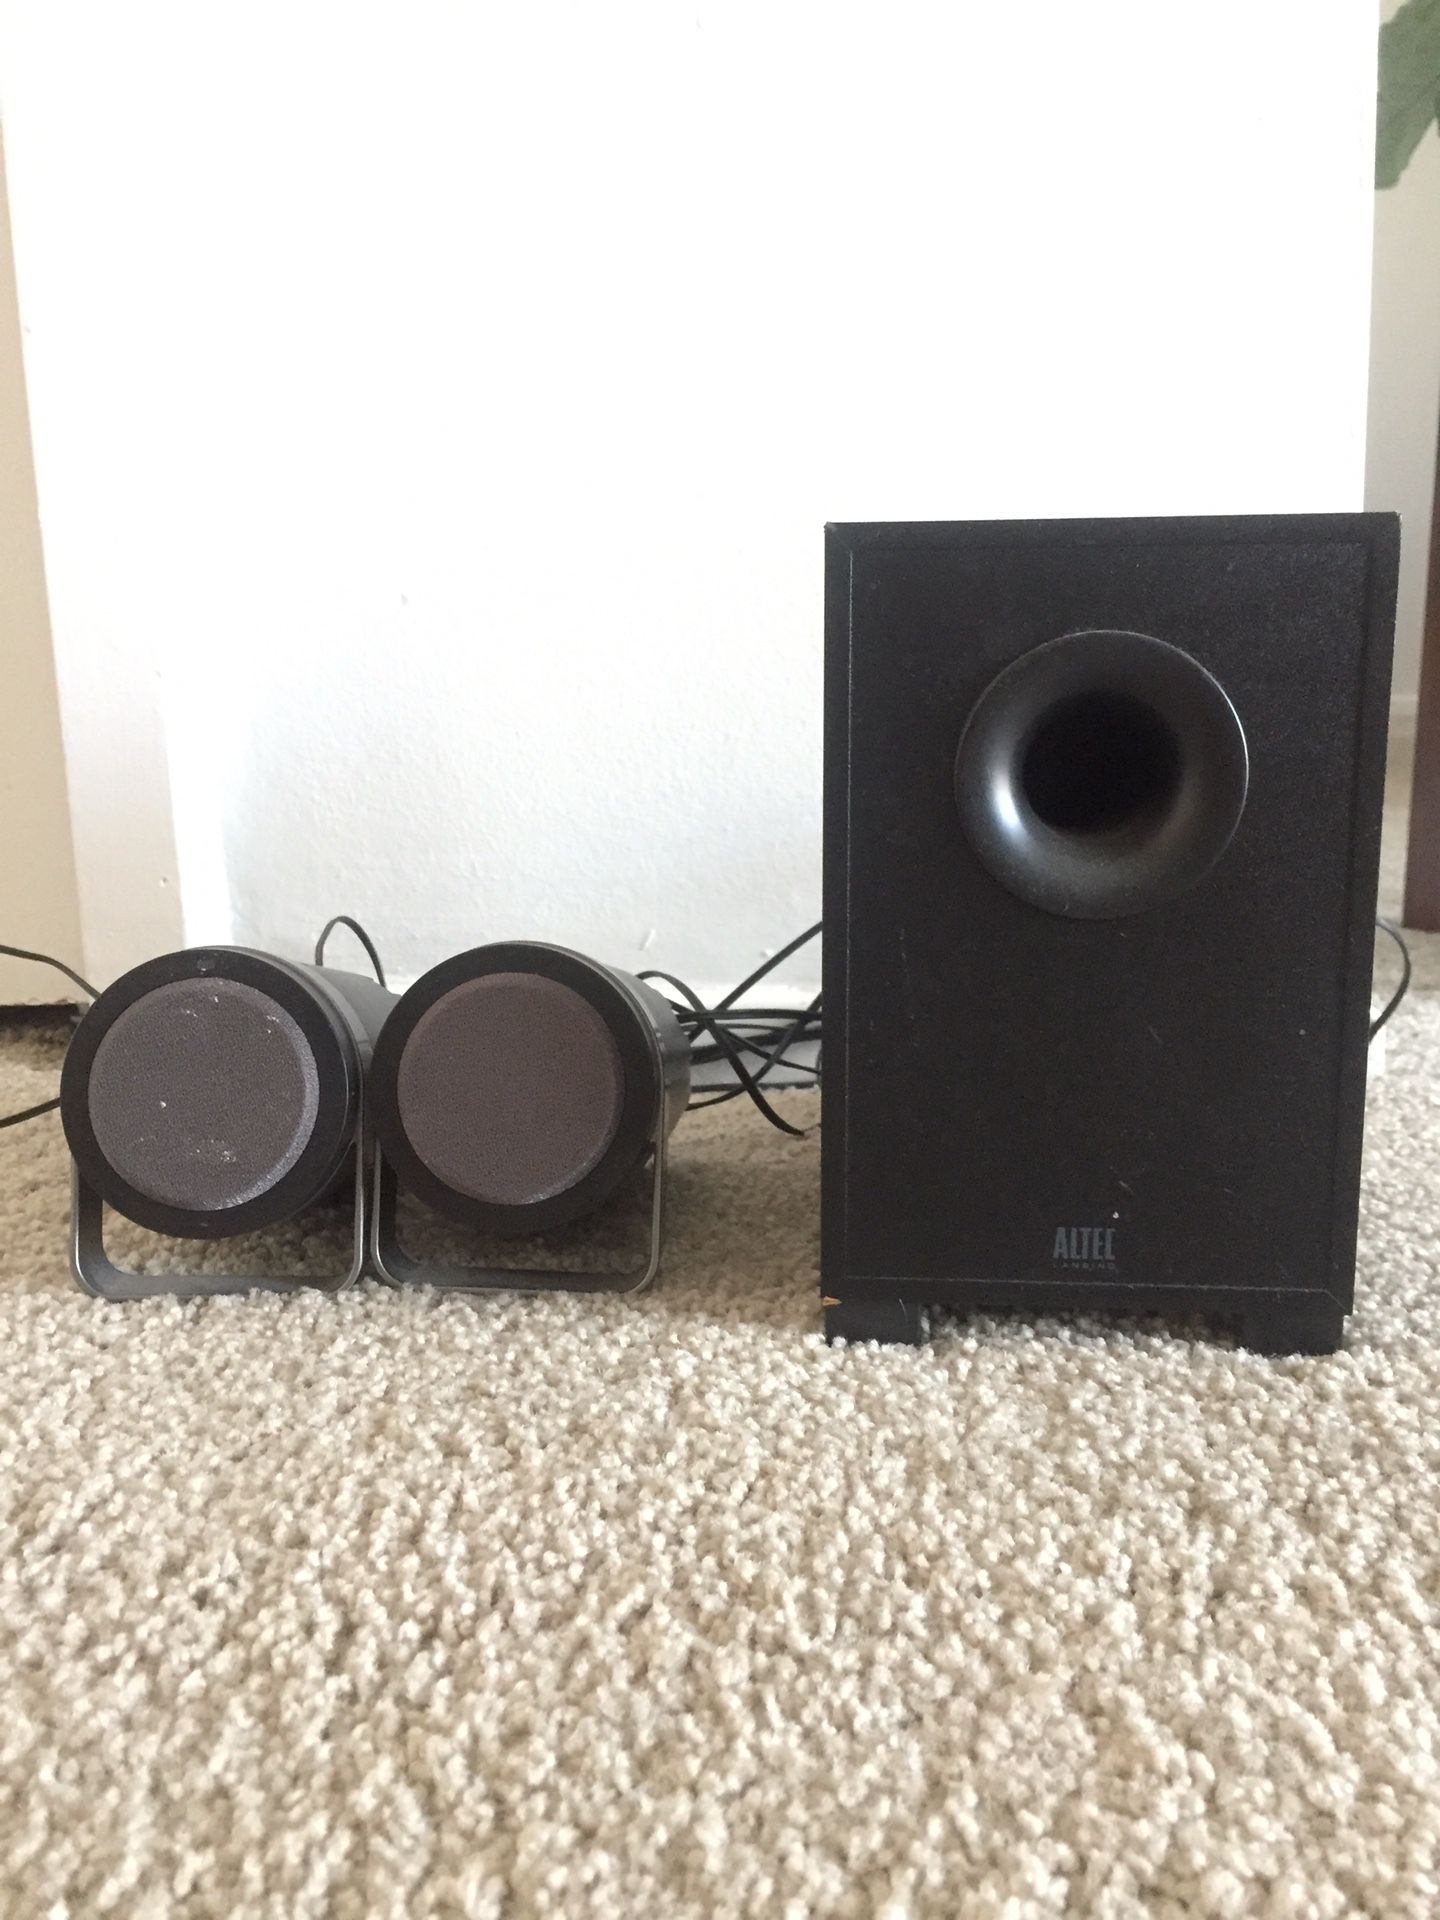 Altec speakers & subwoofer